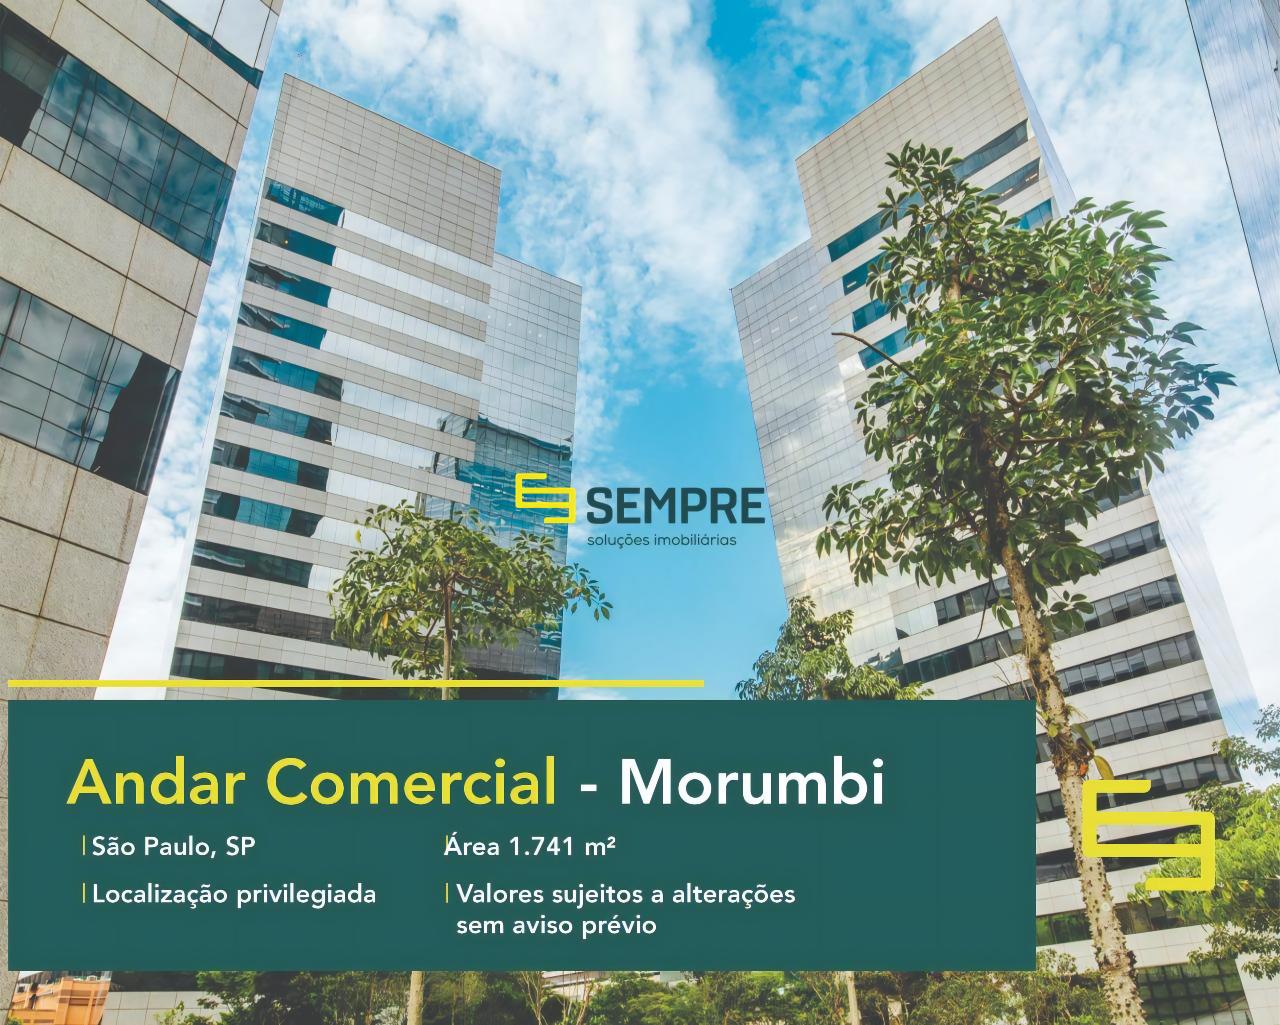 Andar corporativo para alugar no Morumbi em São Paulo, excelente localização. O estabelecimento comercial conta com área de 1.741 m².